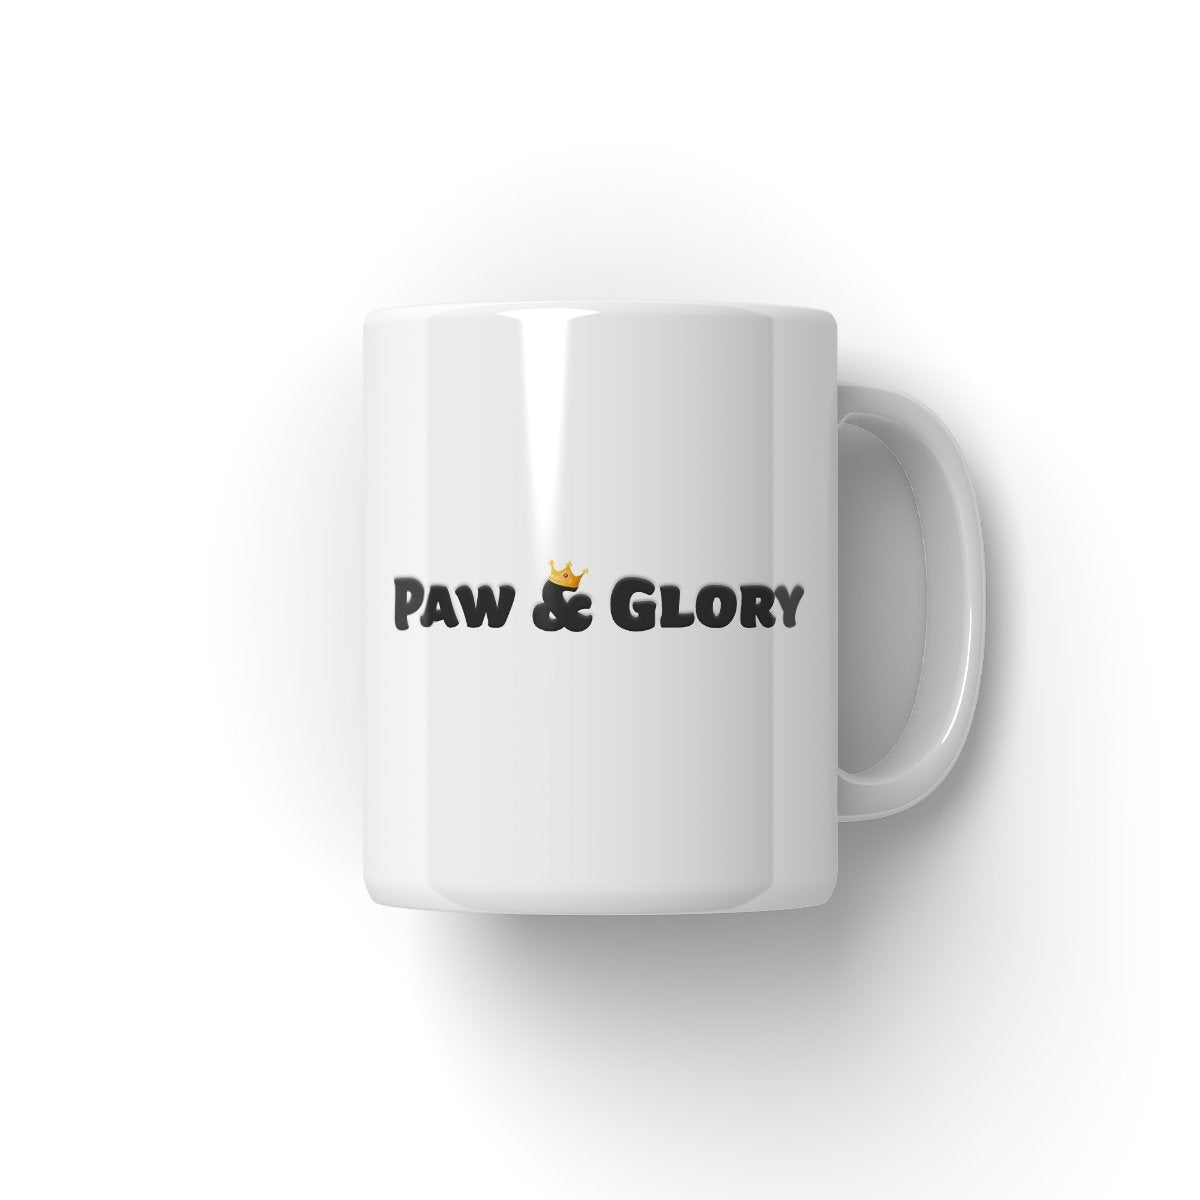 The Michael Jackson Paw & Glory, pawandglory, custom mug with cats, personalized dog mugs, personalised mugs with dogs, personalized pet mugs, pet art mug, personalized coffee mug with cats, Pet Portrait Mug